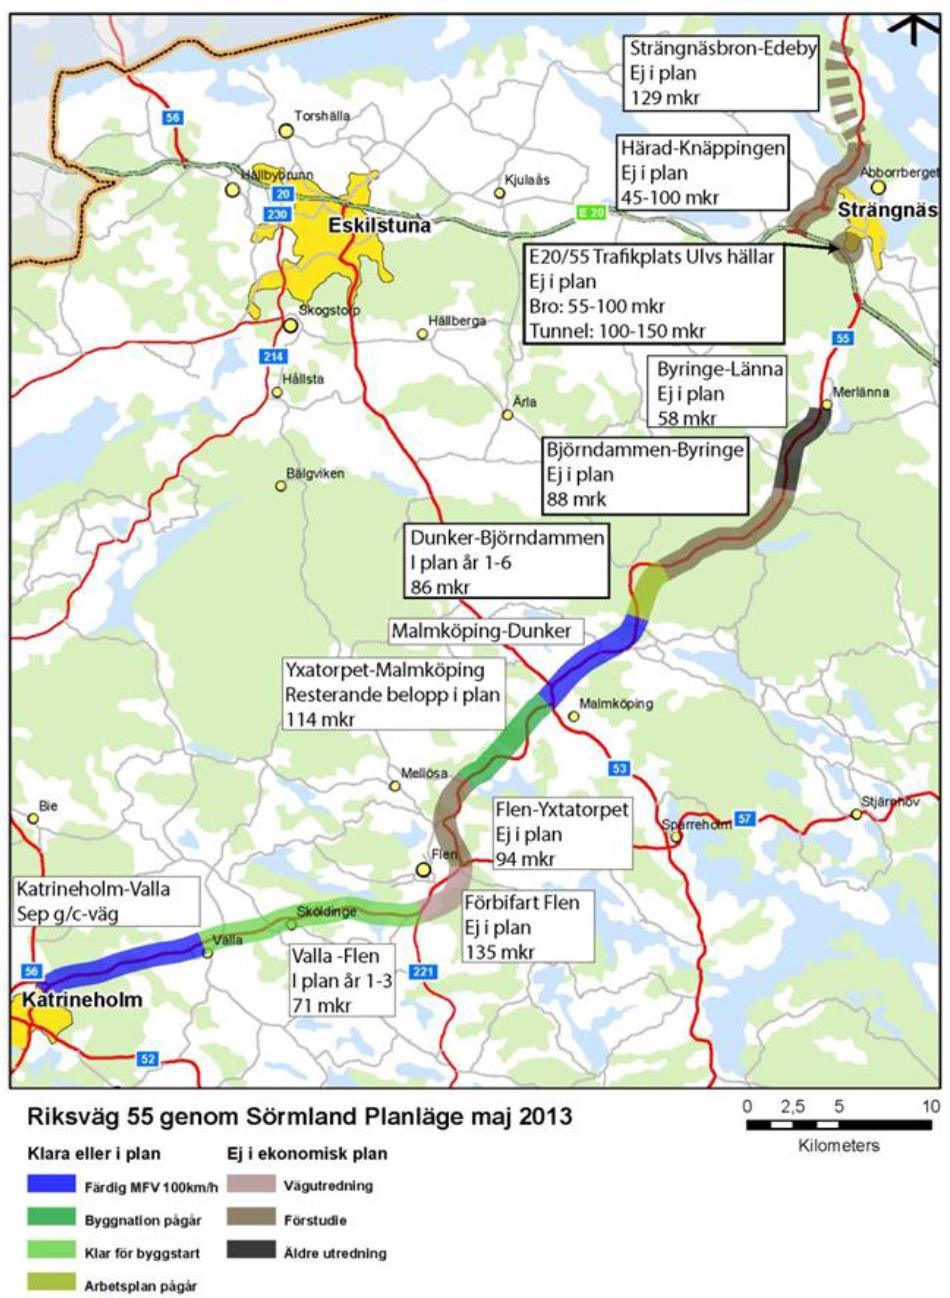 Figur 4. Planläge maj 2013 enligt regionala planen för Sörmland.